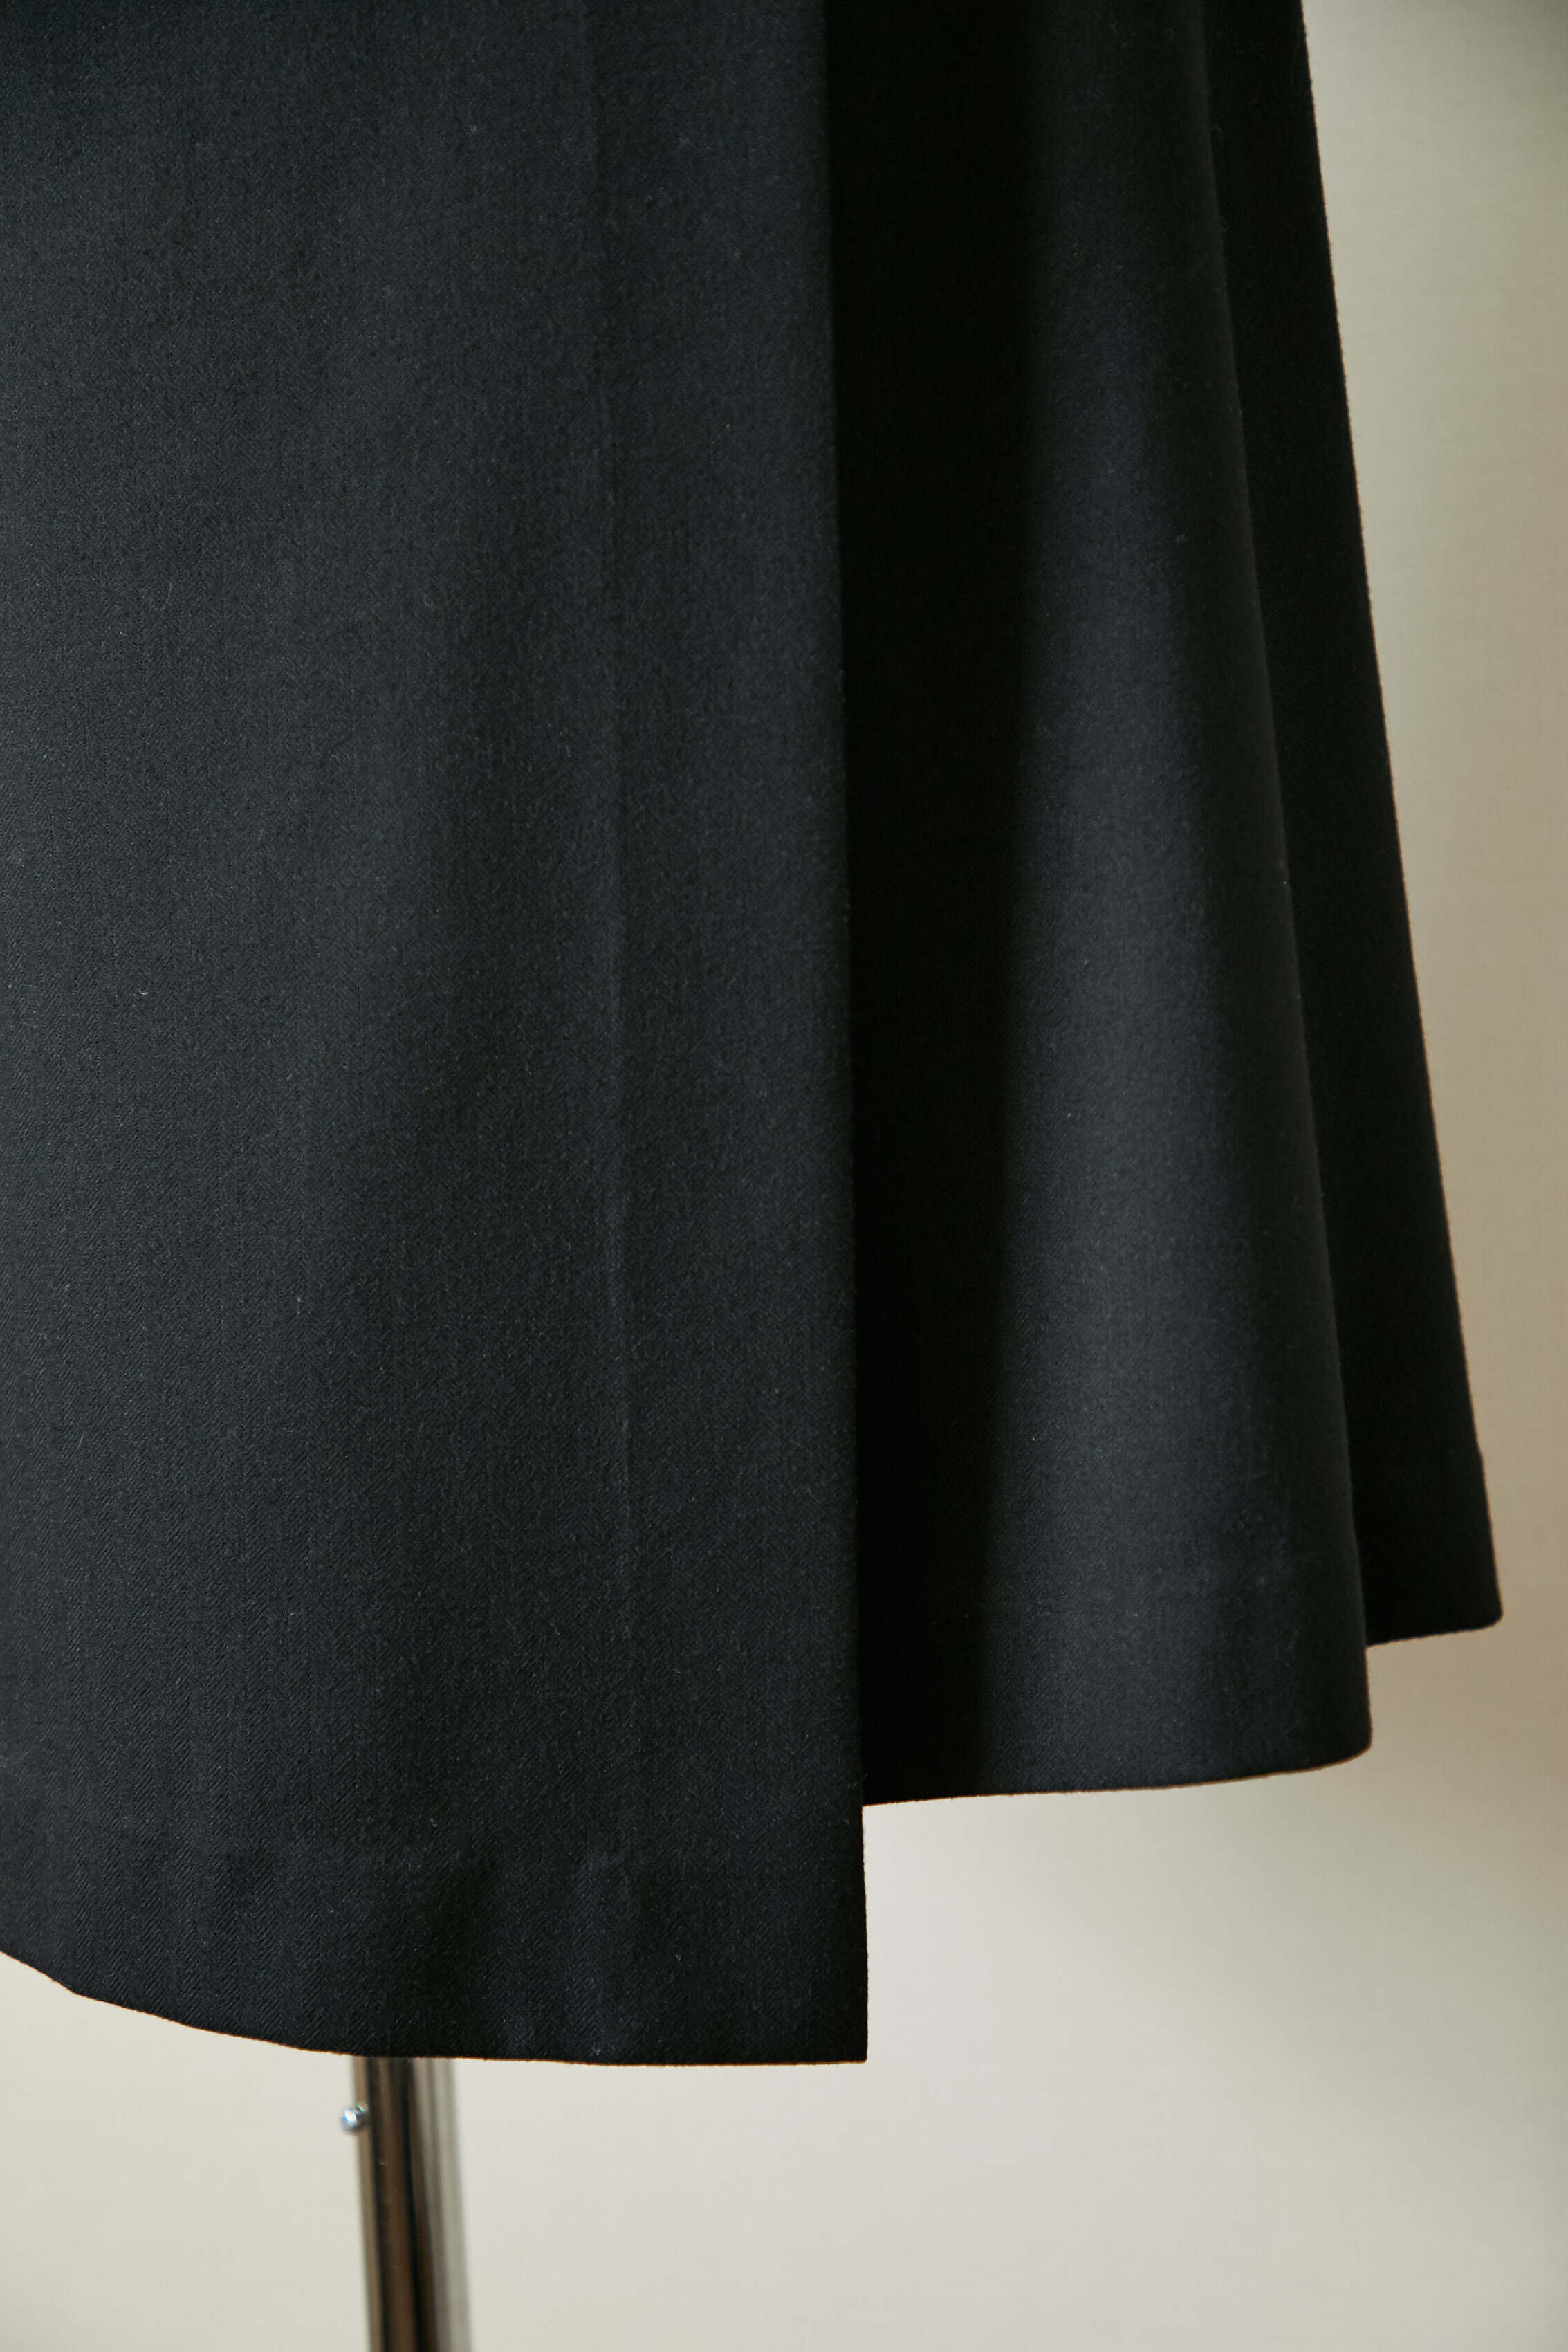 プレゼントを選ぼう！ SATOKAスカートKate blackaサイズ1 | ikebana ...